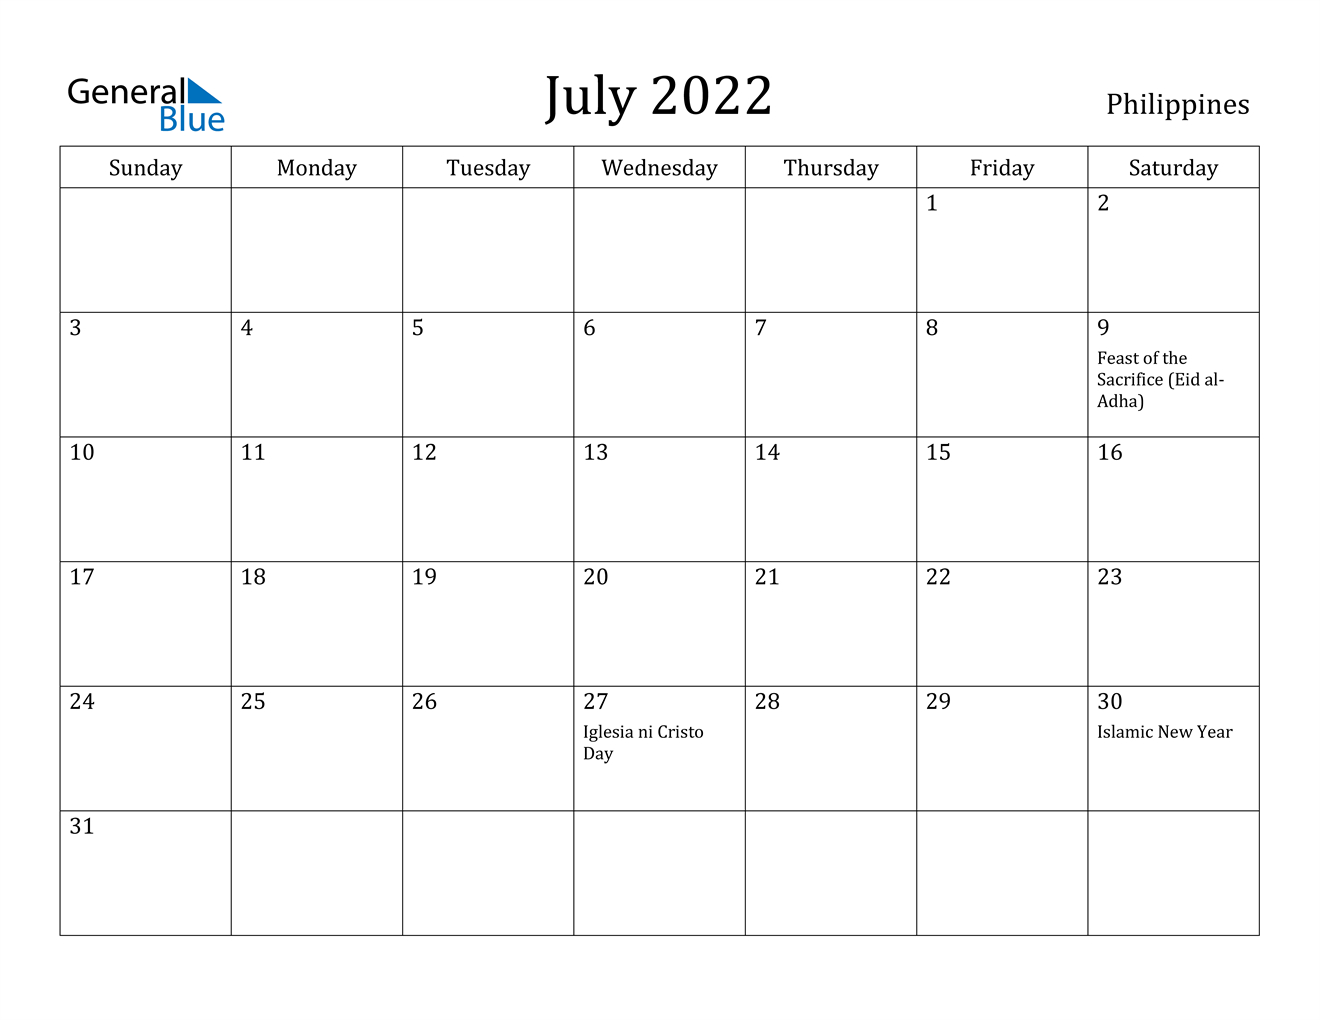 Get Calendar For July 2022